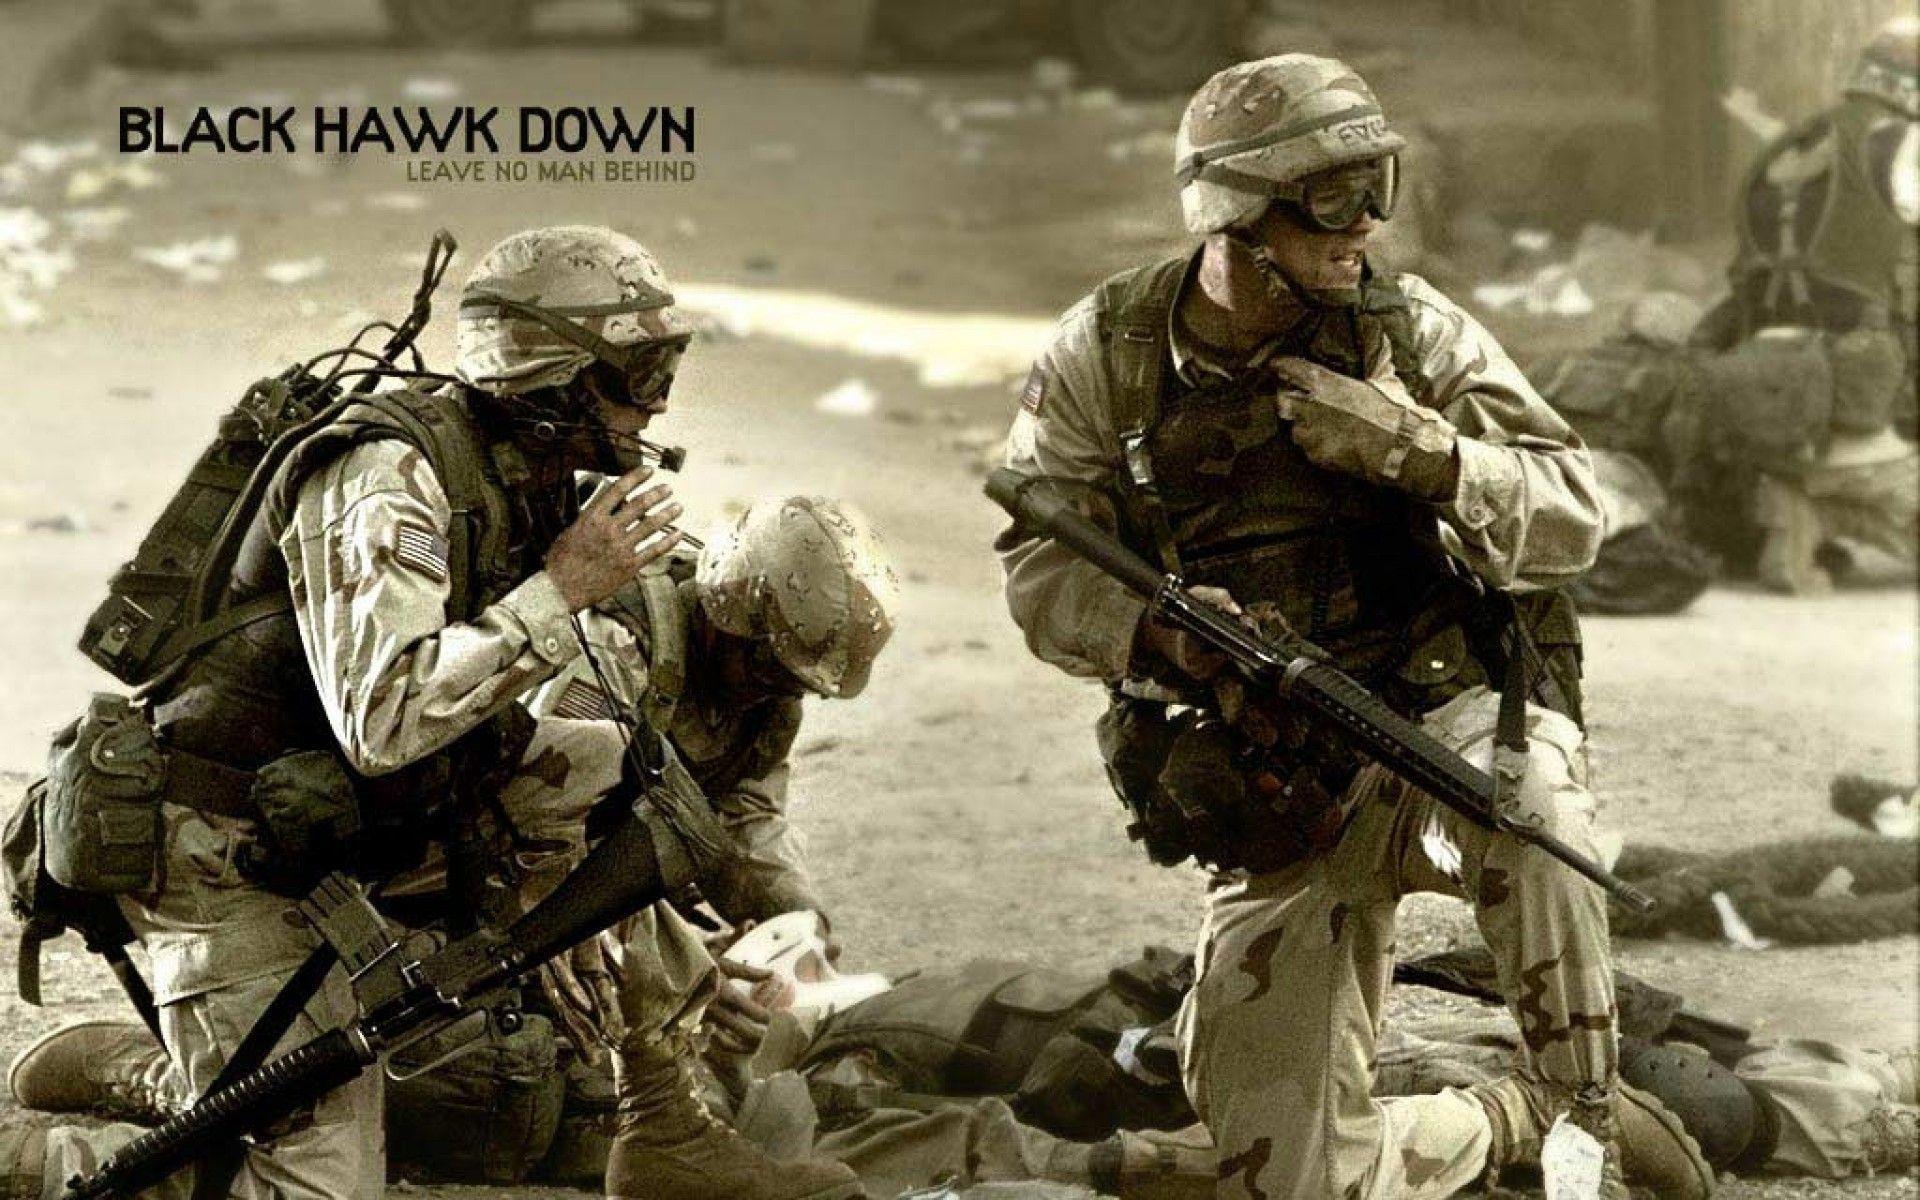 Black Hawk Down Wallpaper, Black Hawk Down Wallpaper for Desktop